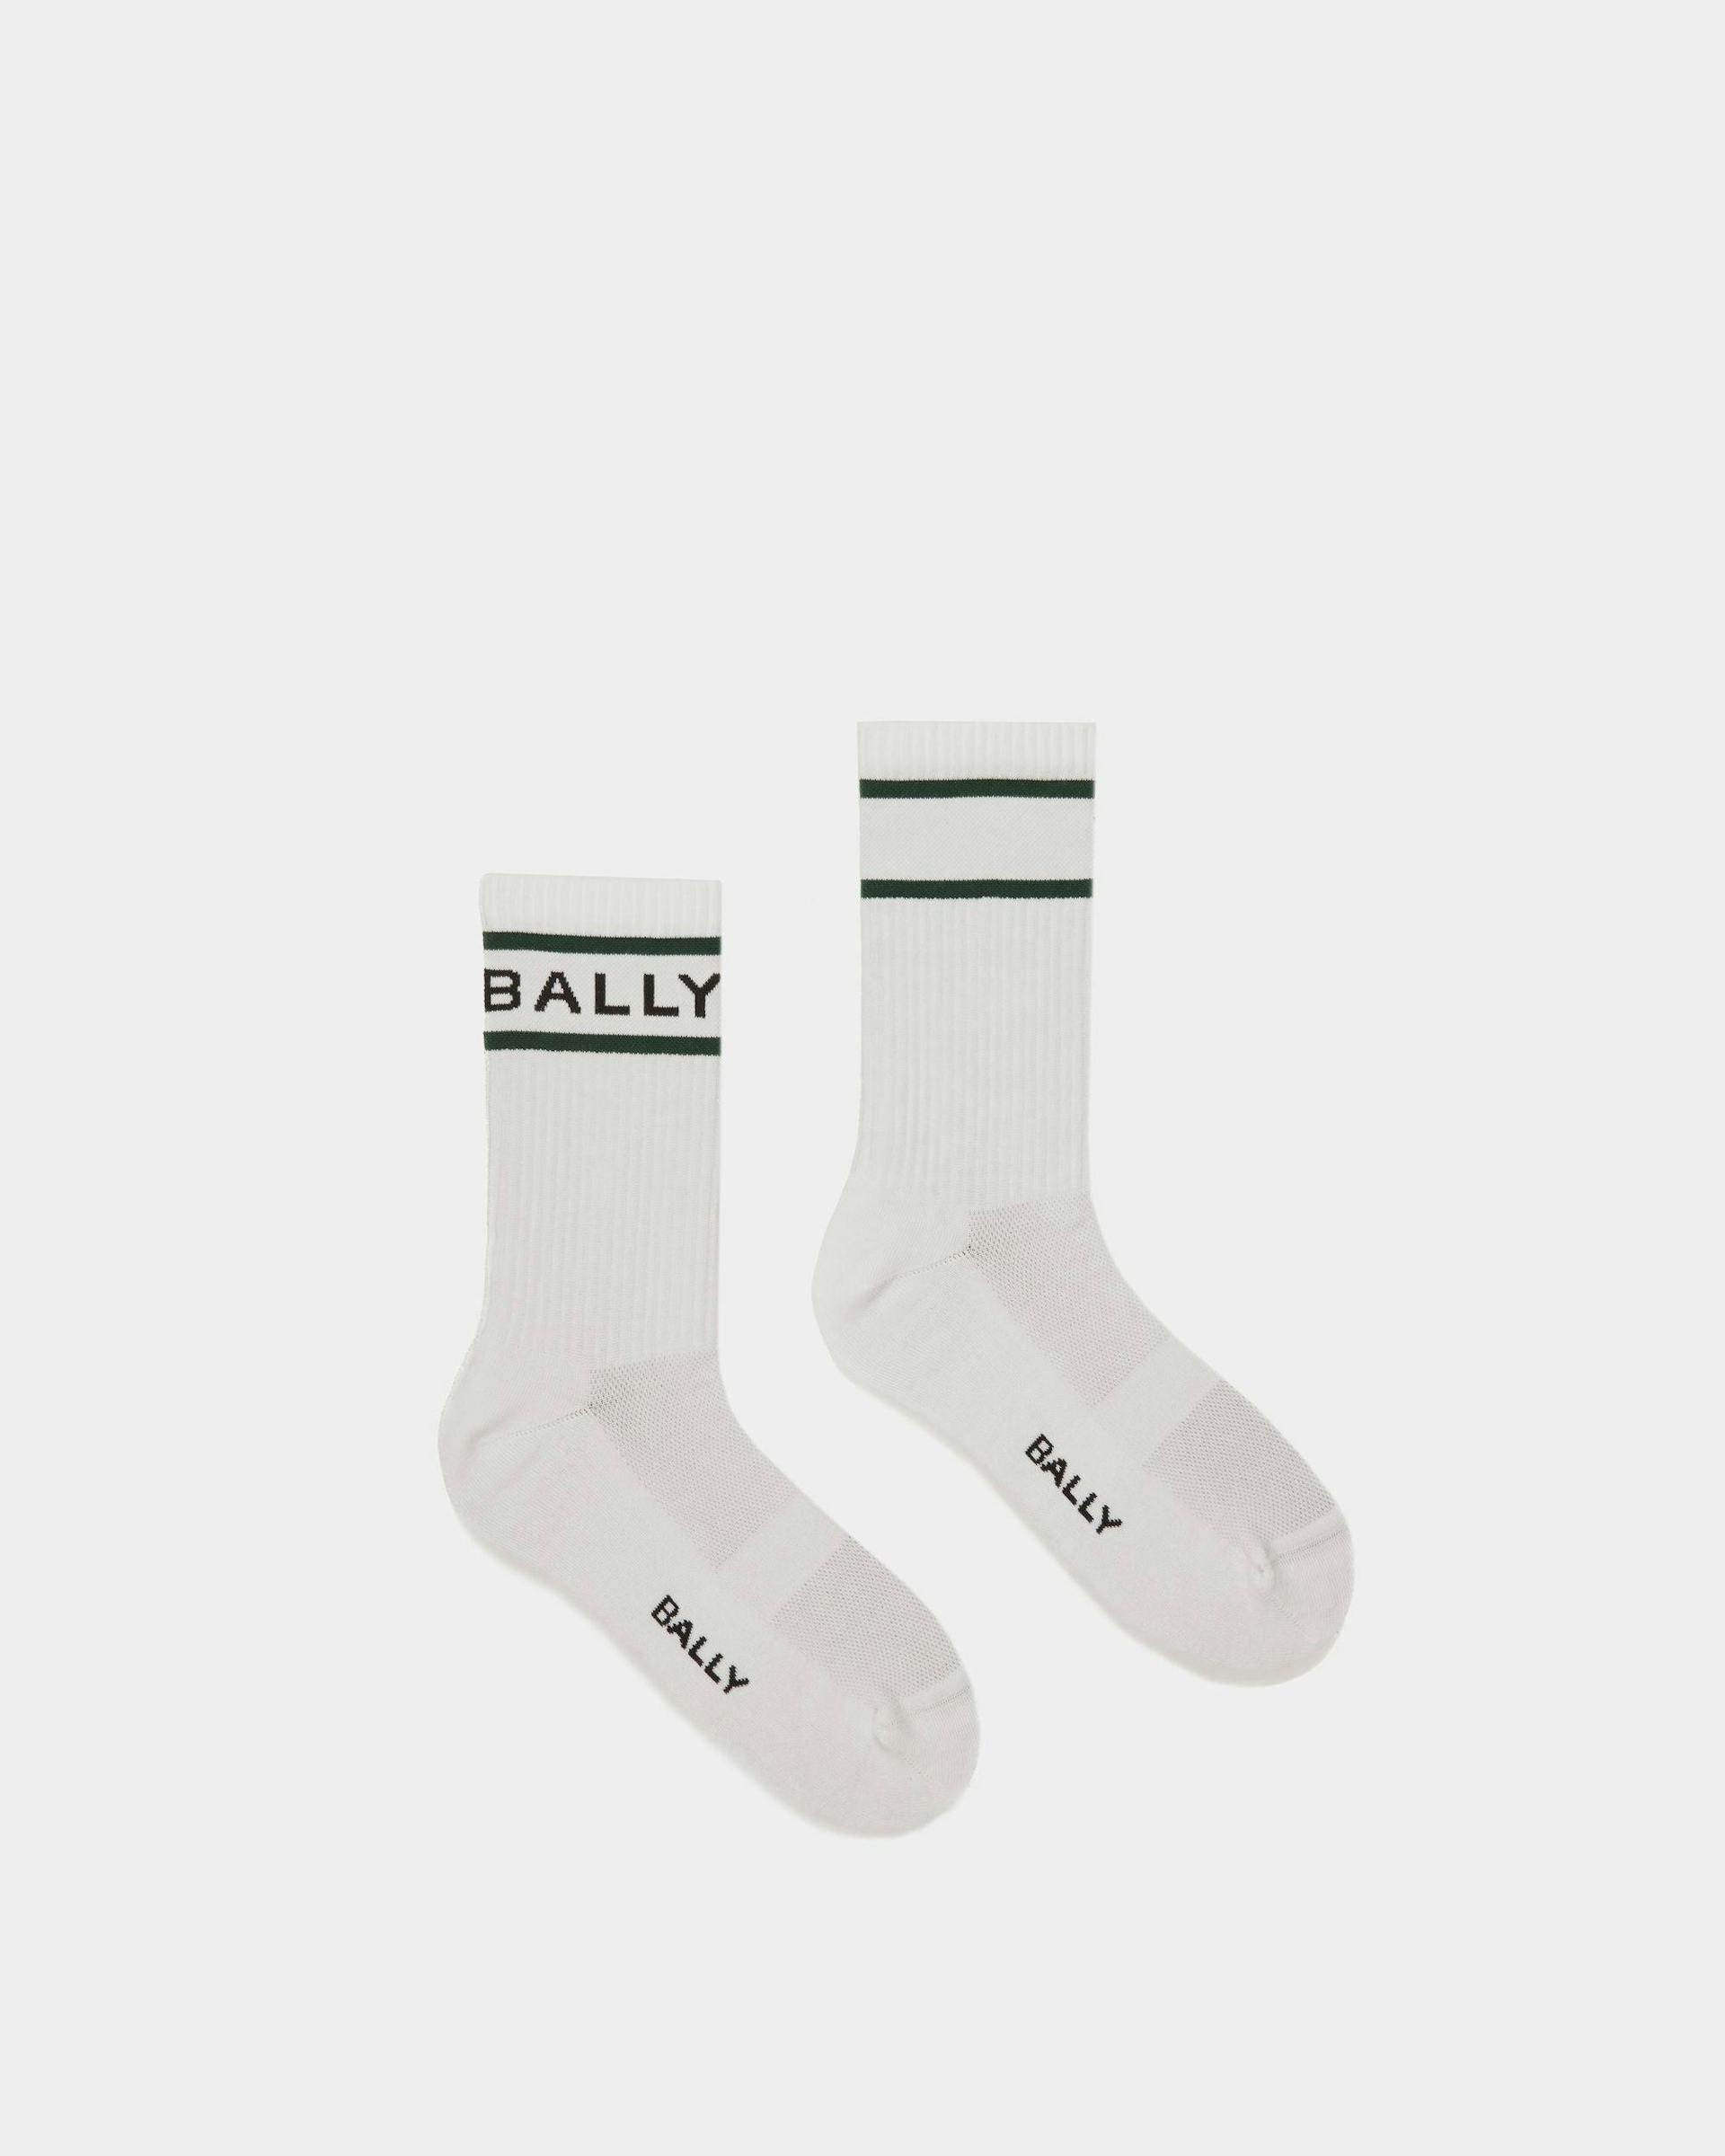 Calze Bally Stripe In Bianco E Verde - Uomo - Bally - 01